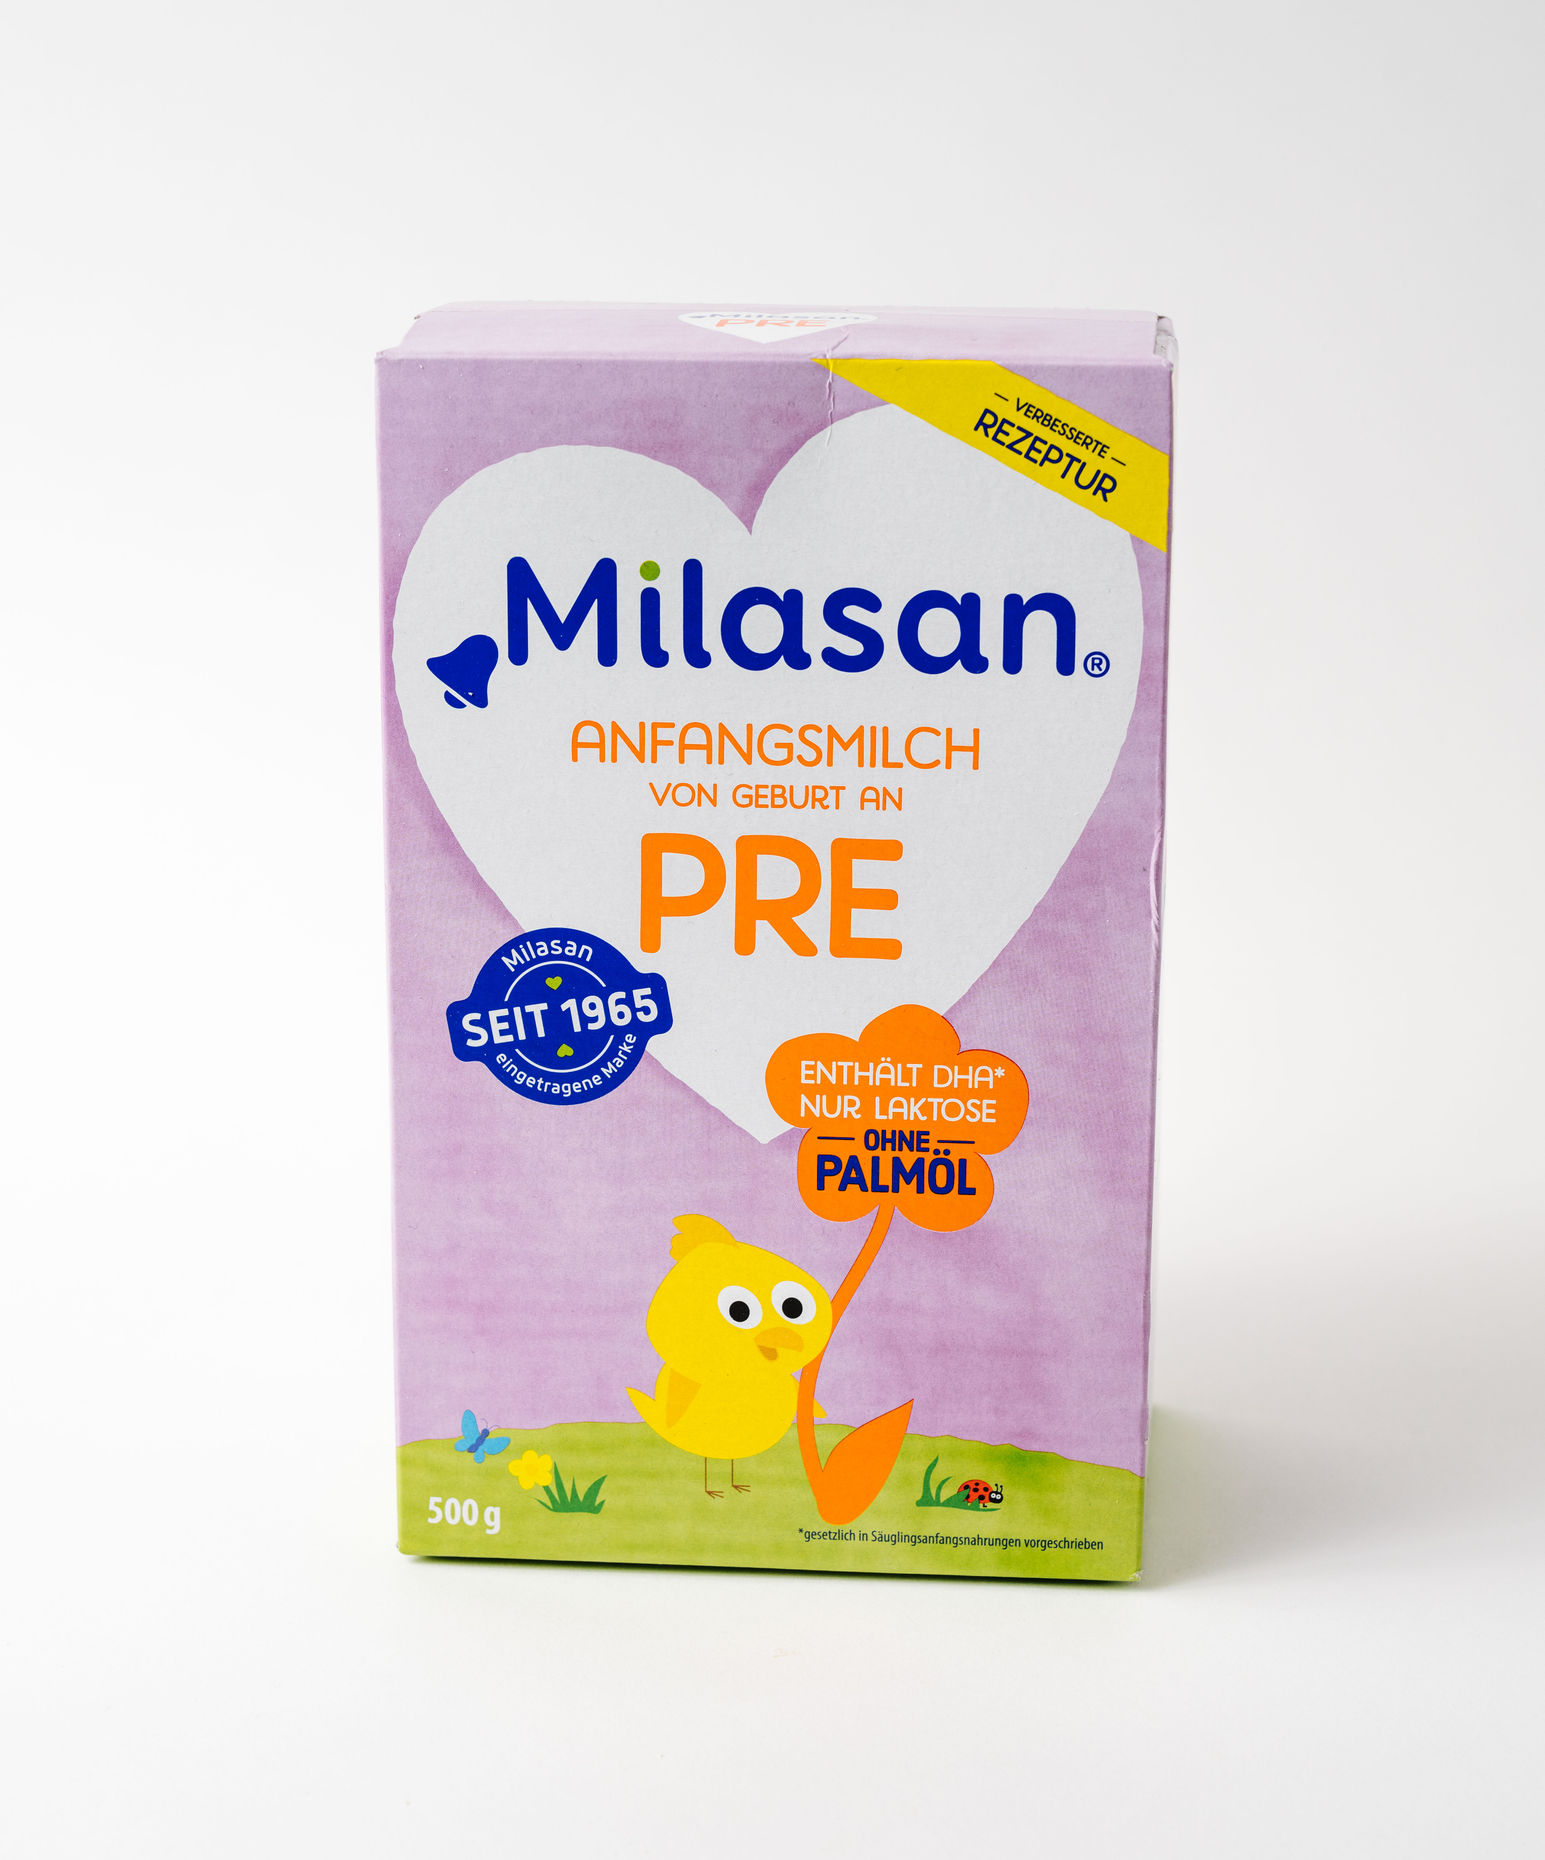 Milram Milk Formula for Infants